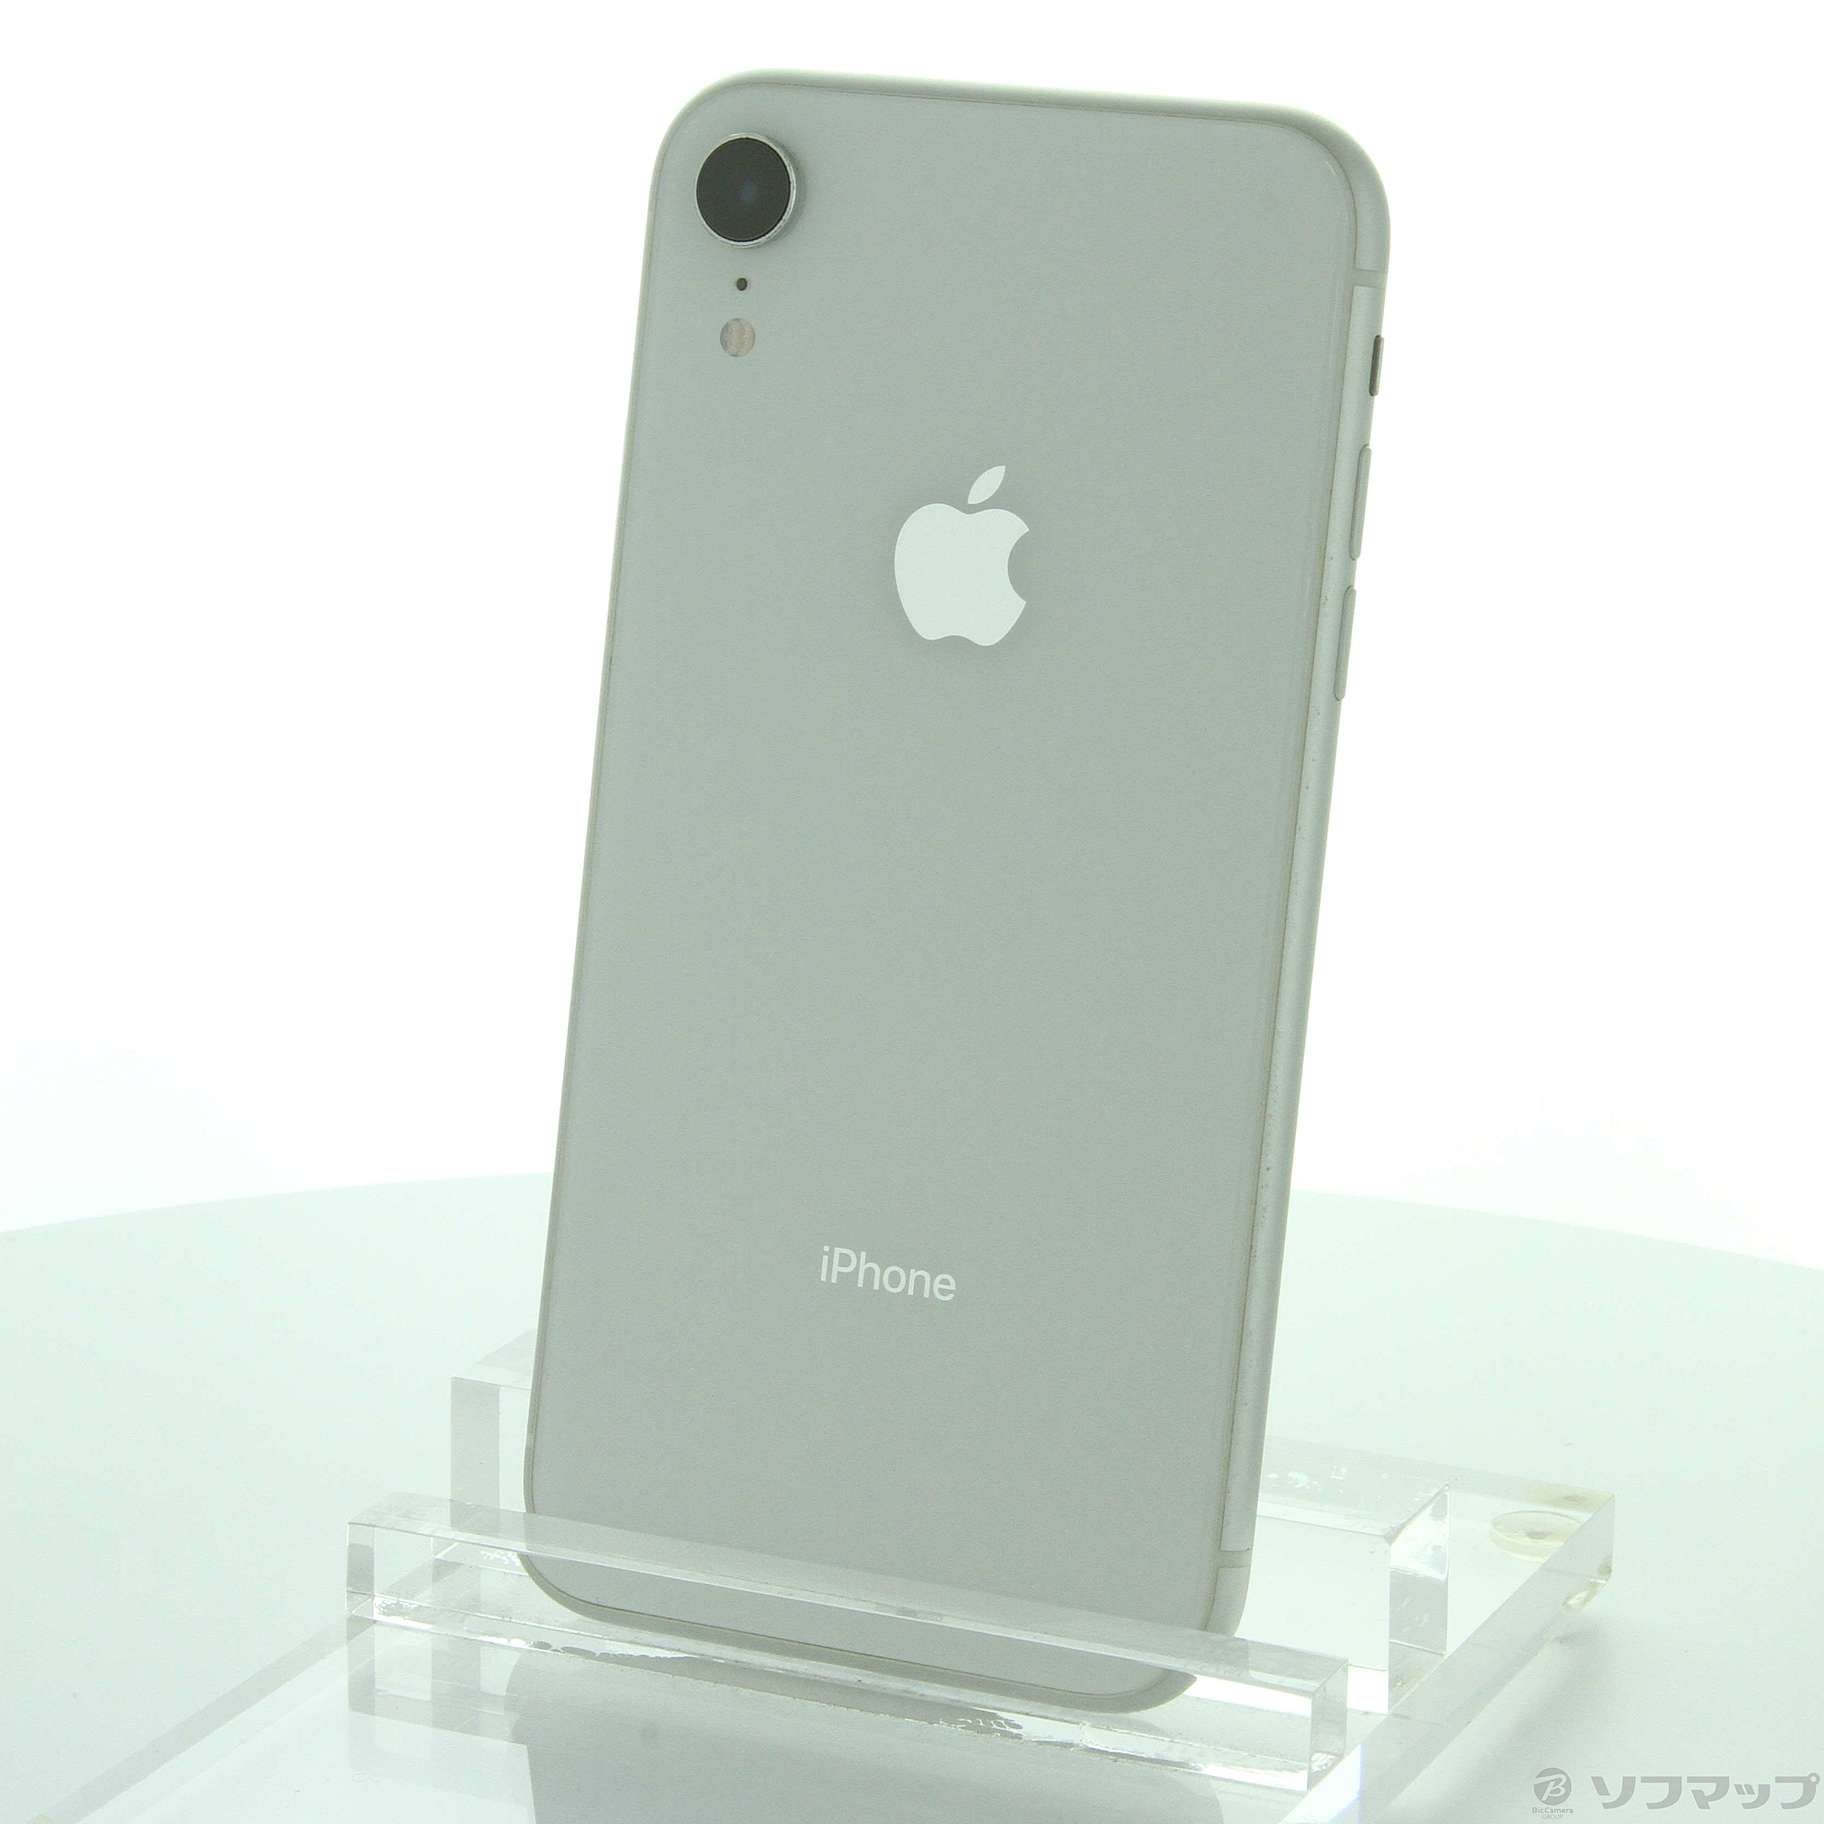 iPhone XR White 64 GB SIMフリー-